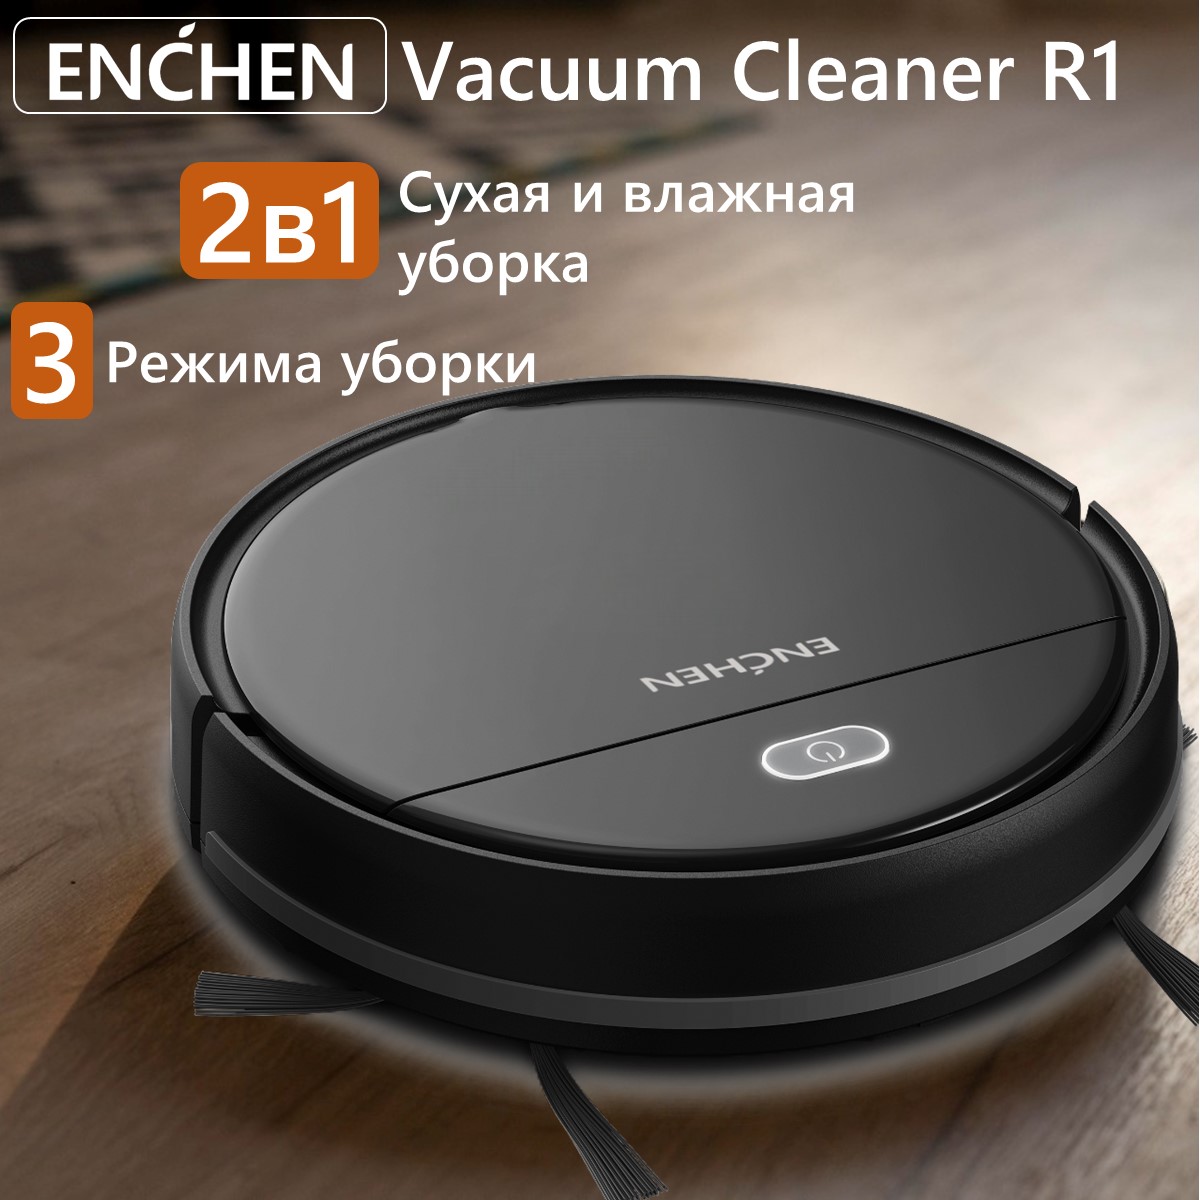 Робот-пылесос ENCHEN Vacuum Cleaner R1 черный робот пылесос mijia sweeping vacuum cleaner 3c cn состояние хорошее